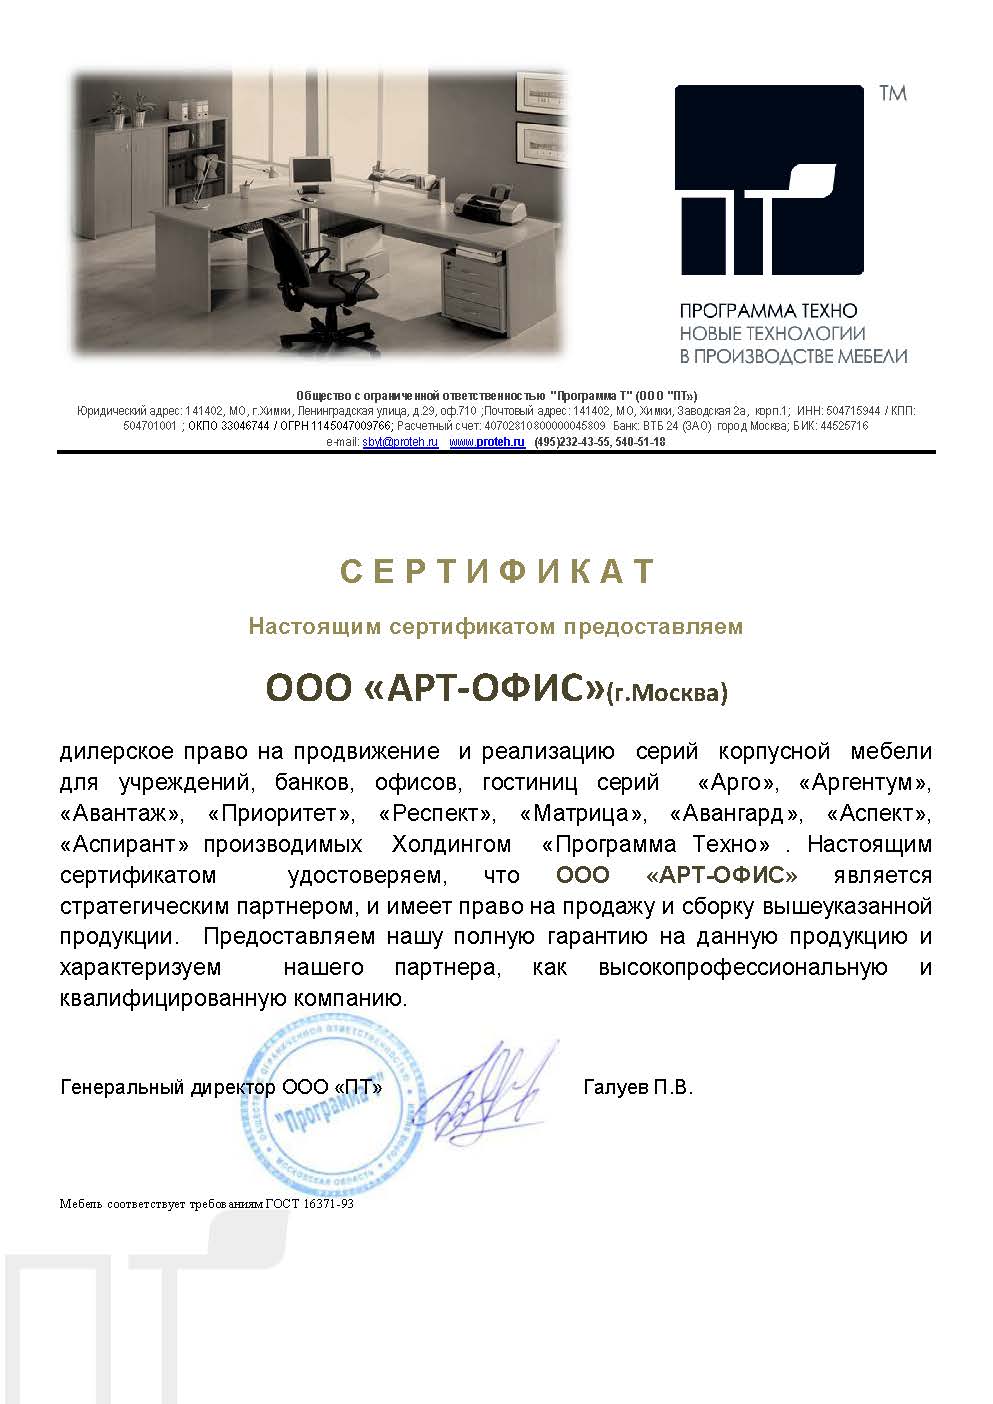 Сертификат от компании "Программа Техно"